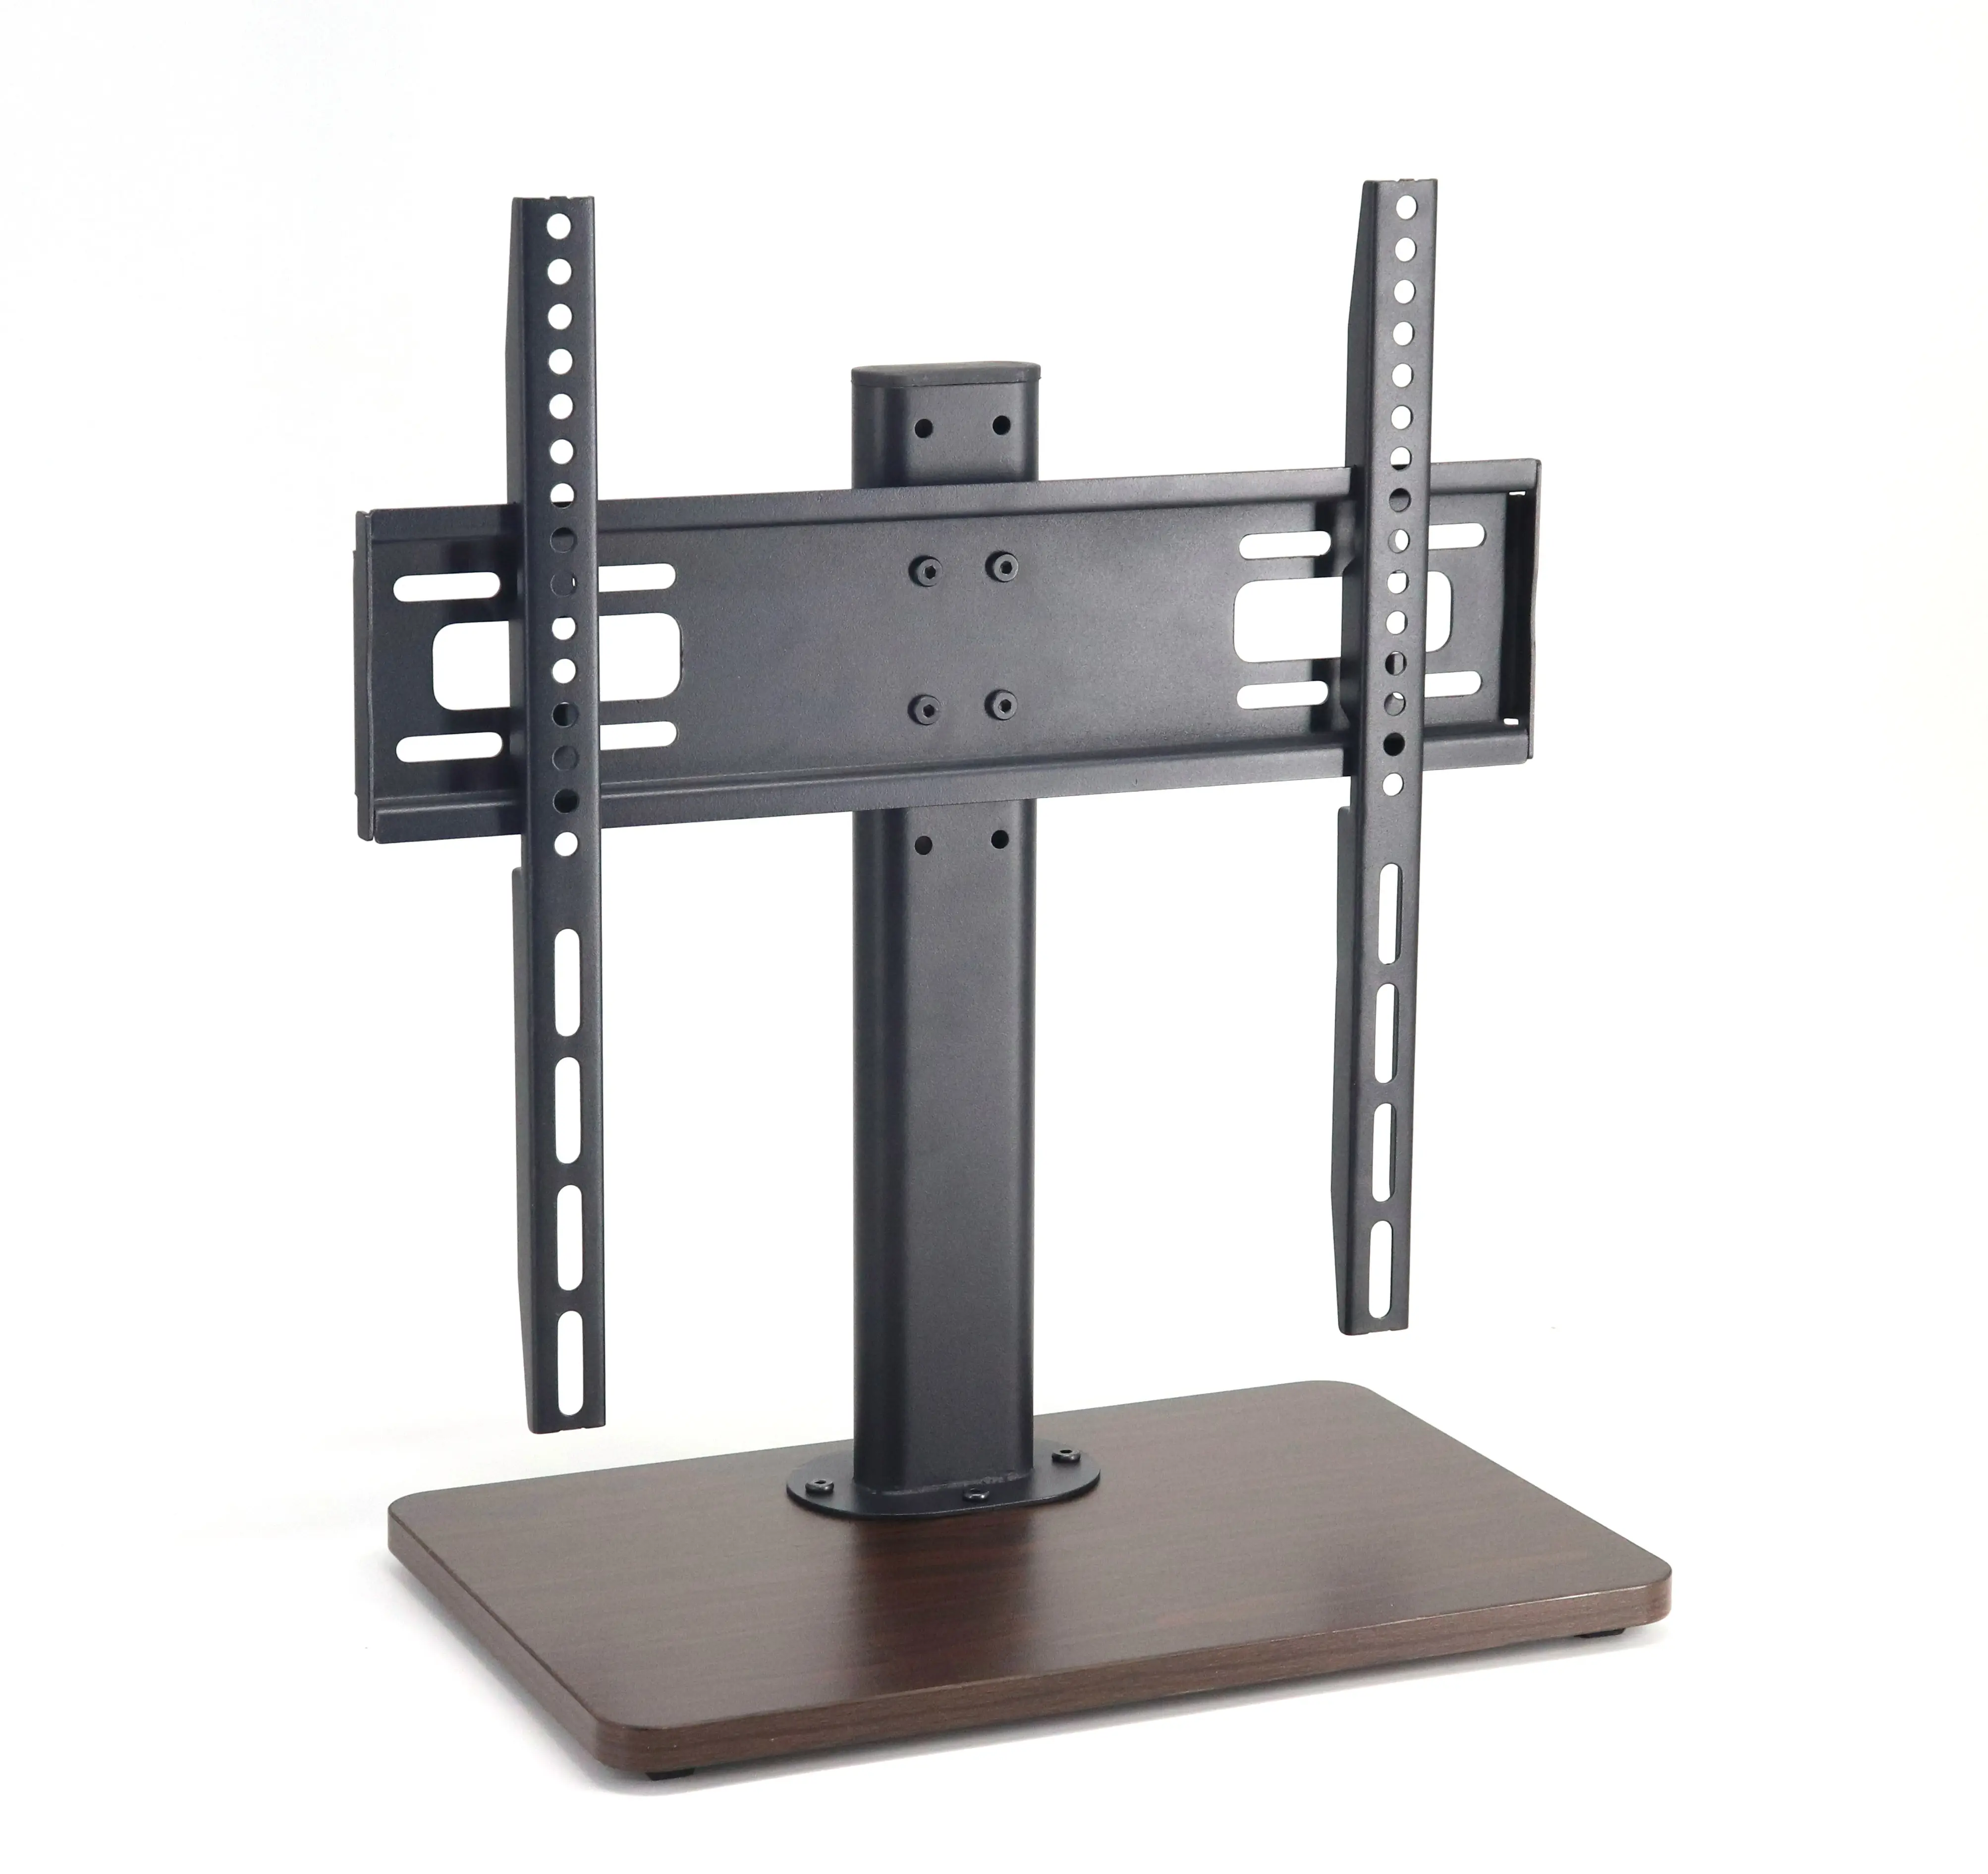 क्लासिक लकड़ी आधार डेस्क शीर्ष टीवी तालिका स्टैंड 32-55 इंच एलसीडी एलईडी टीवी के लिए 400*400mm स्क्रीन 66.1lbs